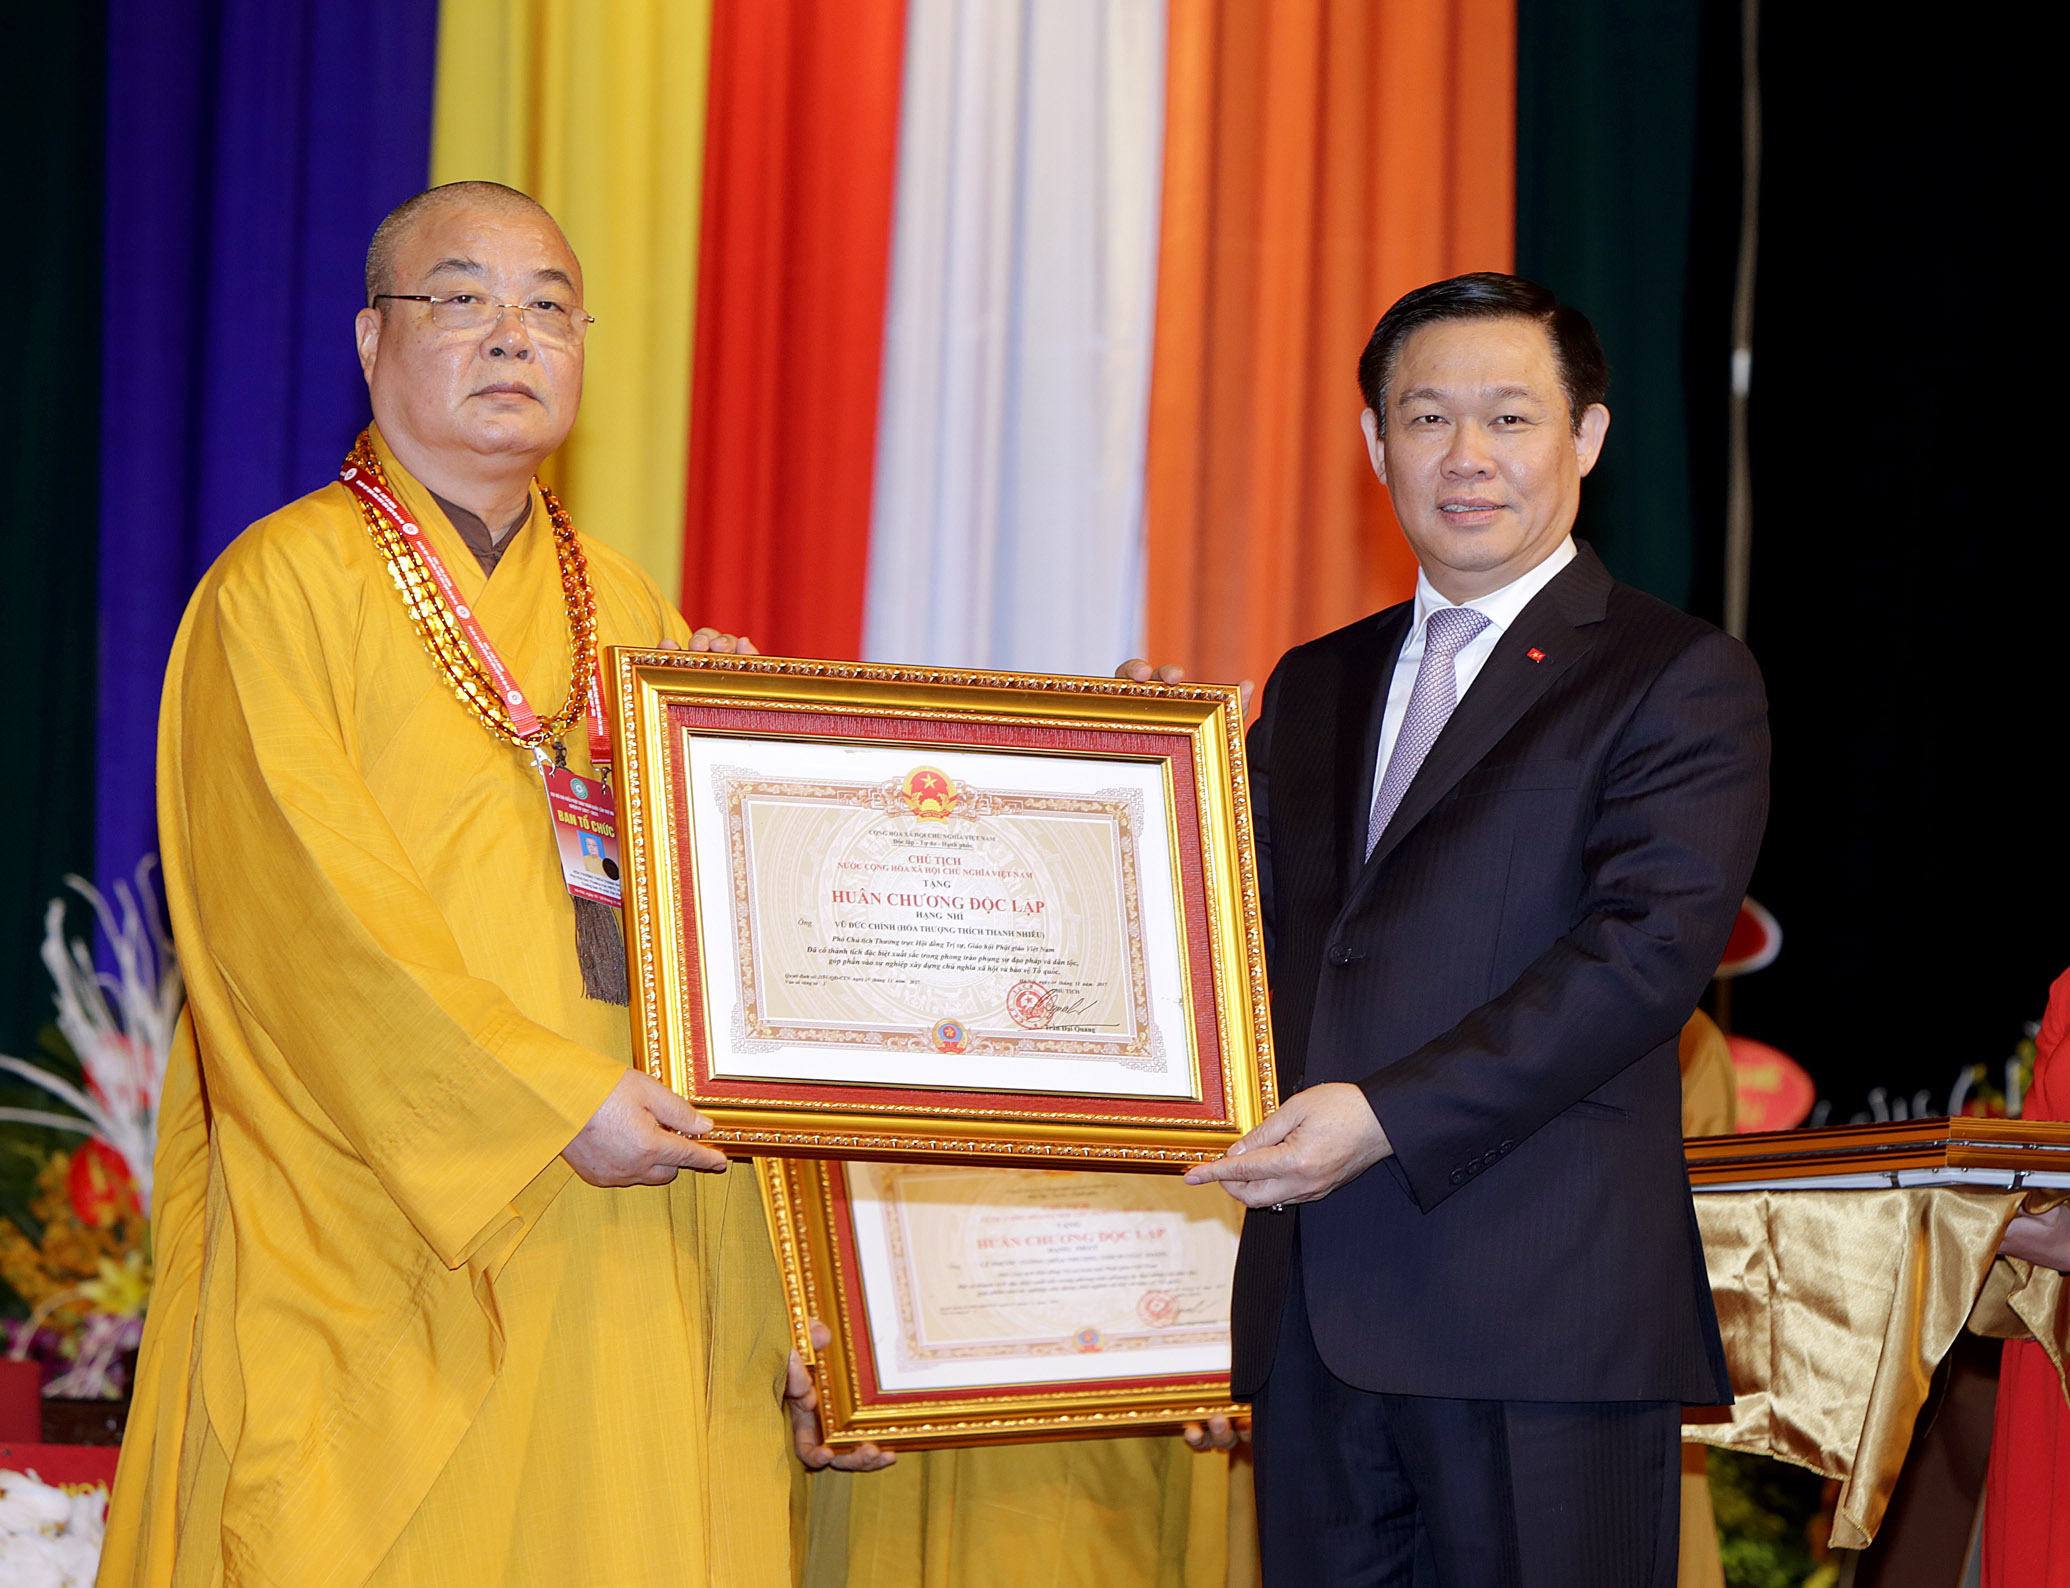 Thừa uỷ quyền của Chủ tịch nước, Phó Thủ tướng Vương Đình Huệ trao tặng Huân chương Độc lập và Huân chương Lao động cho các cá nhân của Giáo hội Phật giáo Việt Nam. Ảnh VGP/Thành Chung